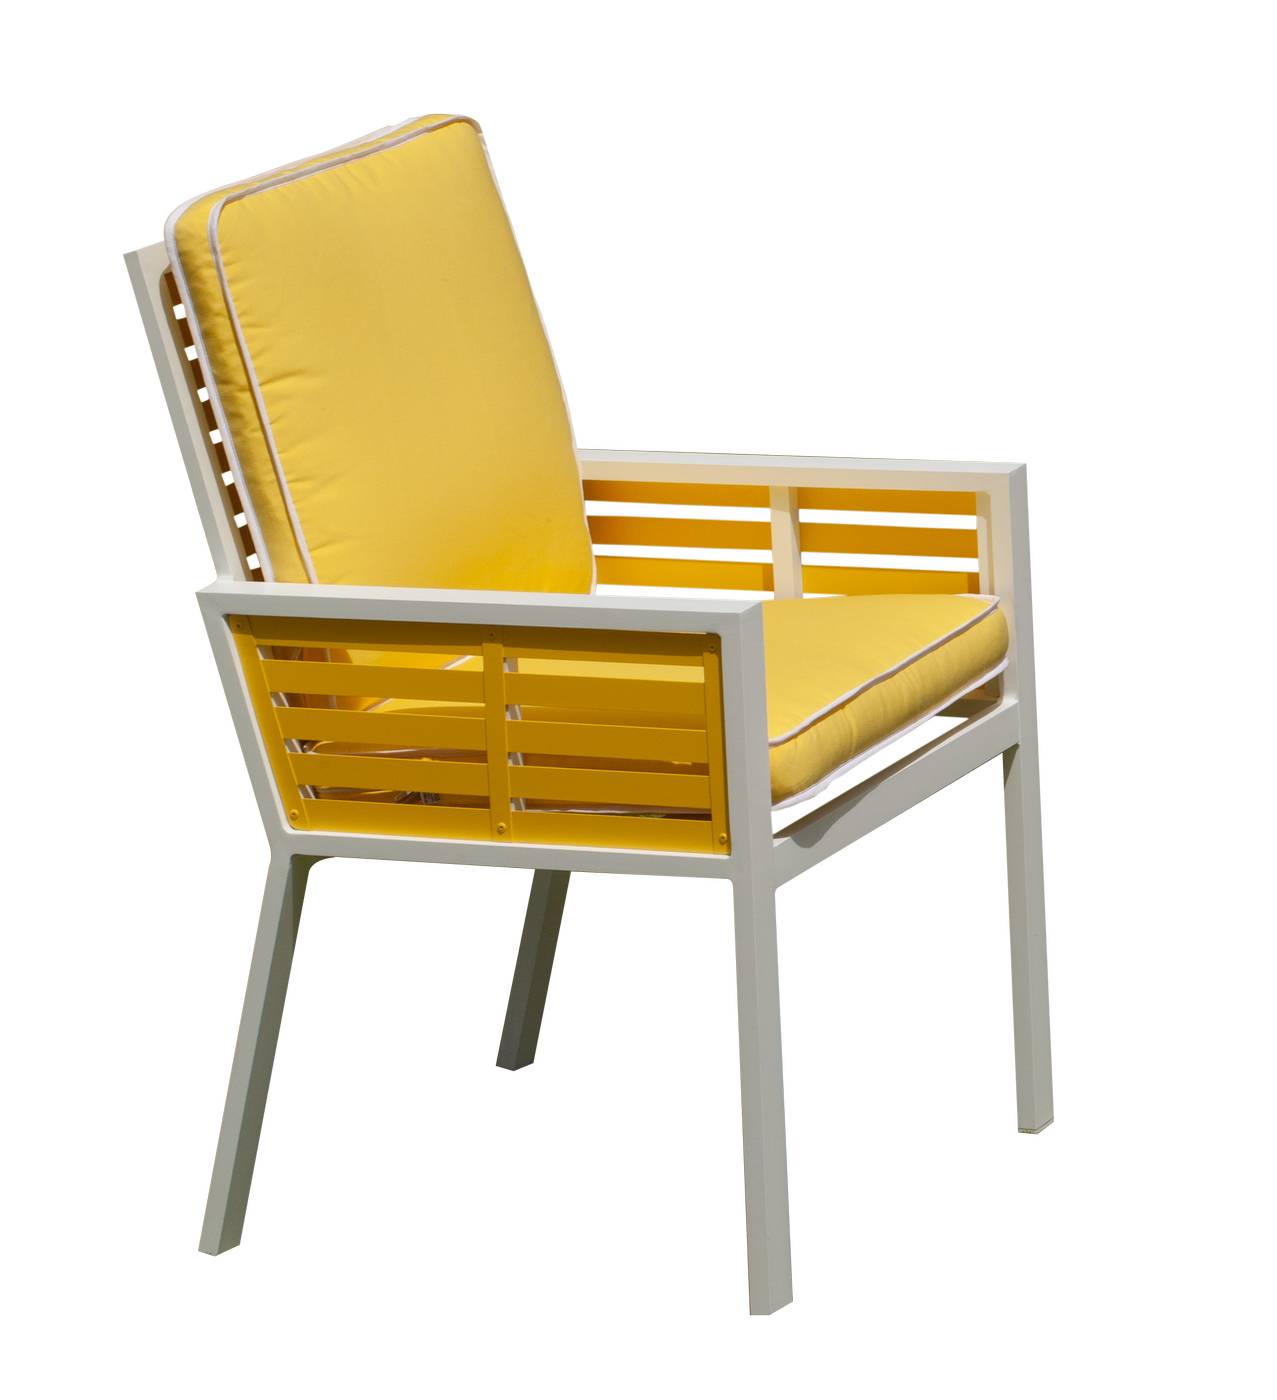 Exclusivo sillón de comedor de aluminio bicolor. Con cómodos cojines asiento y respaldo desenfundables.